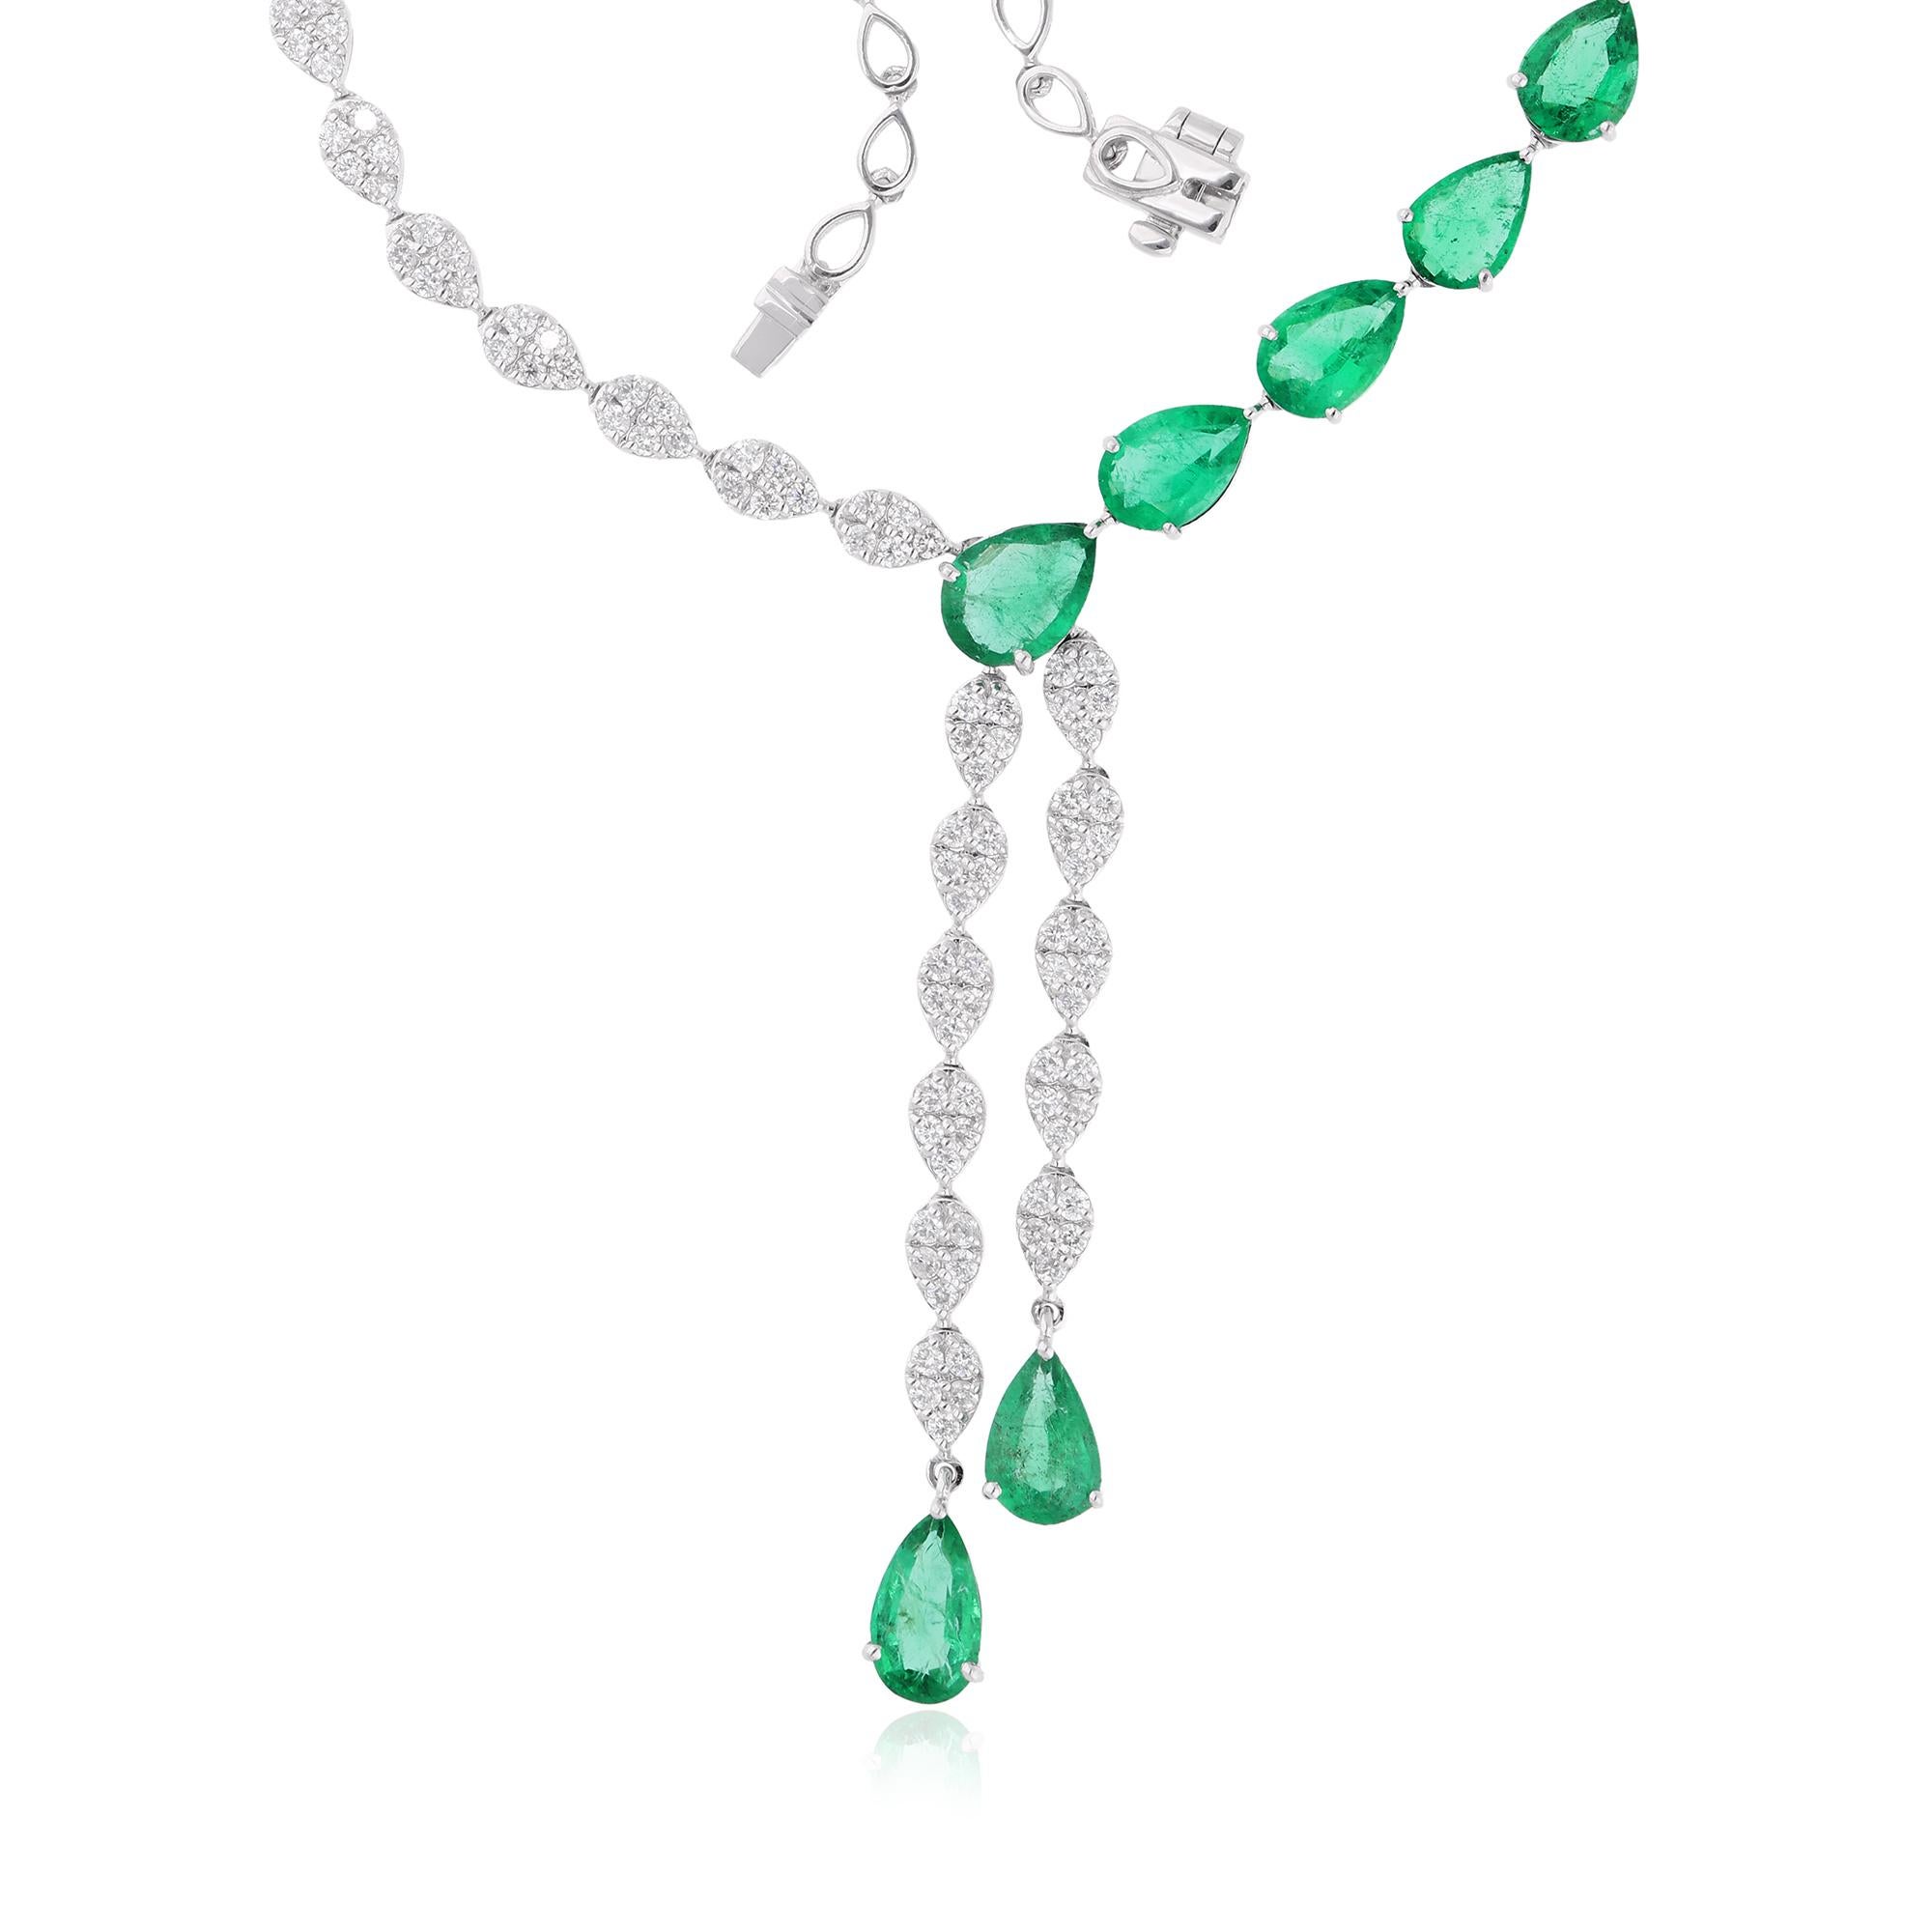 Der Smaragd ist von sorgfältig ausgewählten Birnendiamanten umgeben, von denen jeder einzelne eine bemerkenswerte Brillanz und Klarheit besitzt. Ihr birnenförmiger Schliff verstärkt ihr Funkeln und lässt das Collier in einem schillernden Glanz